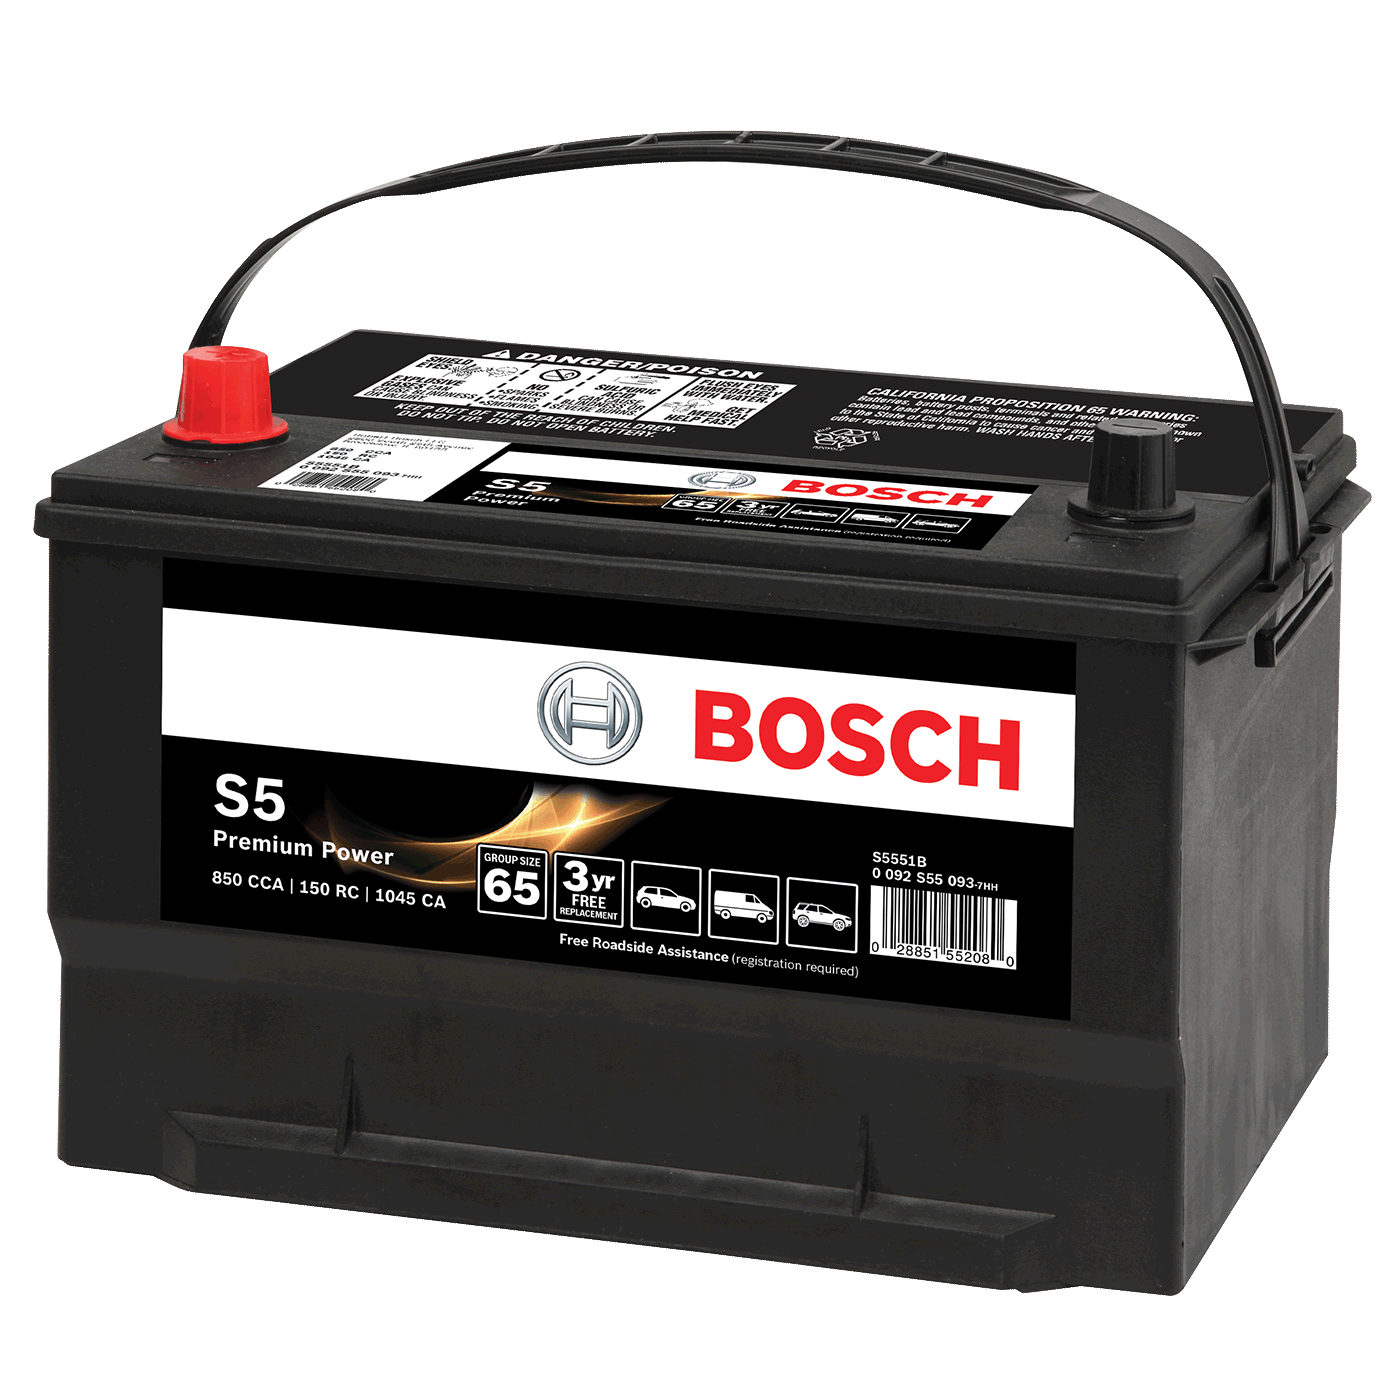 Bosch Car Battery Mail In Rebate